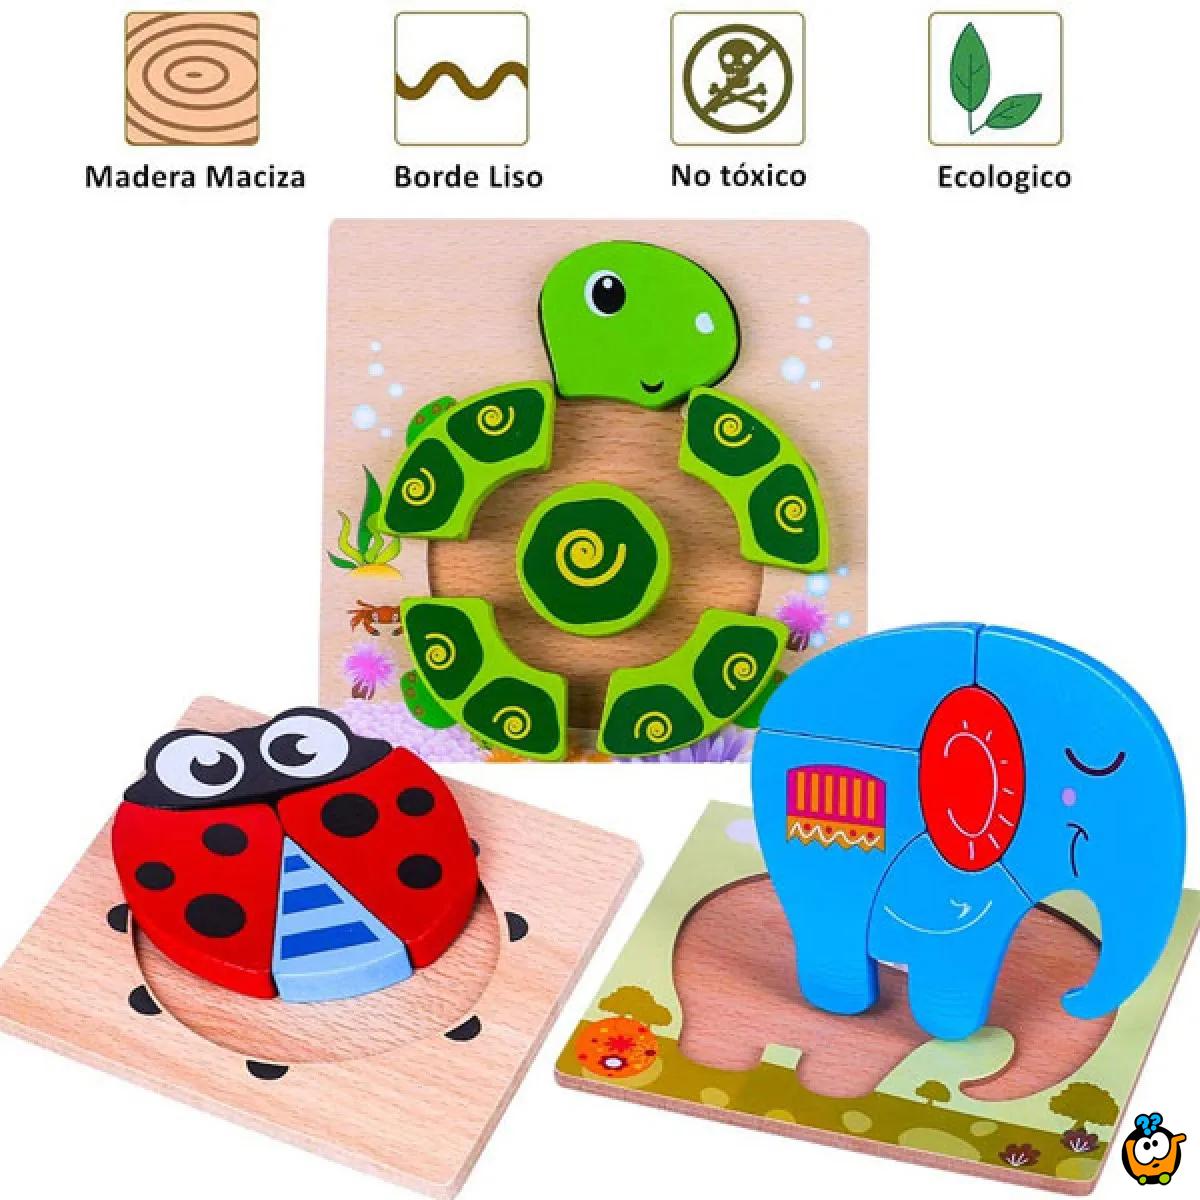 3D kreativne drvene puzle razigranih motiva i boja